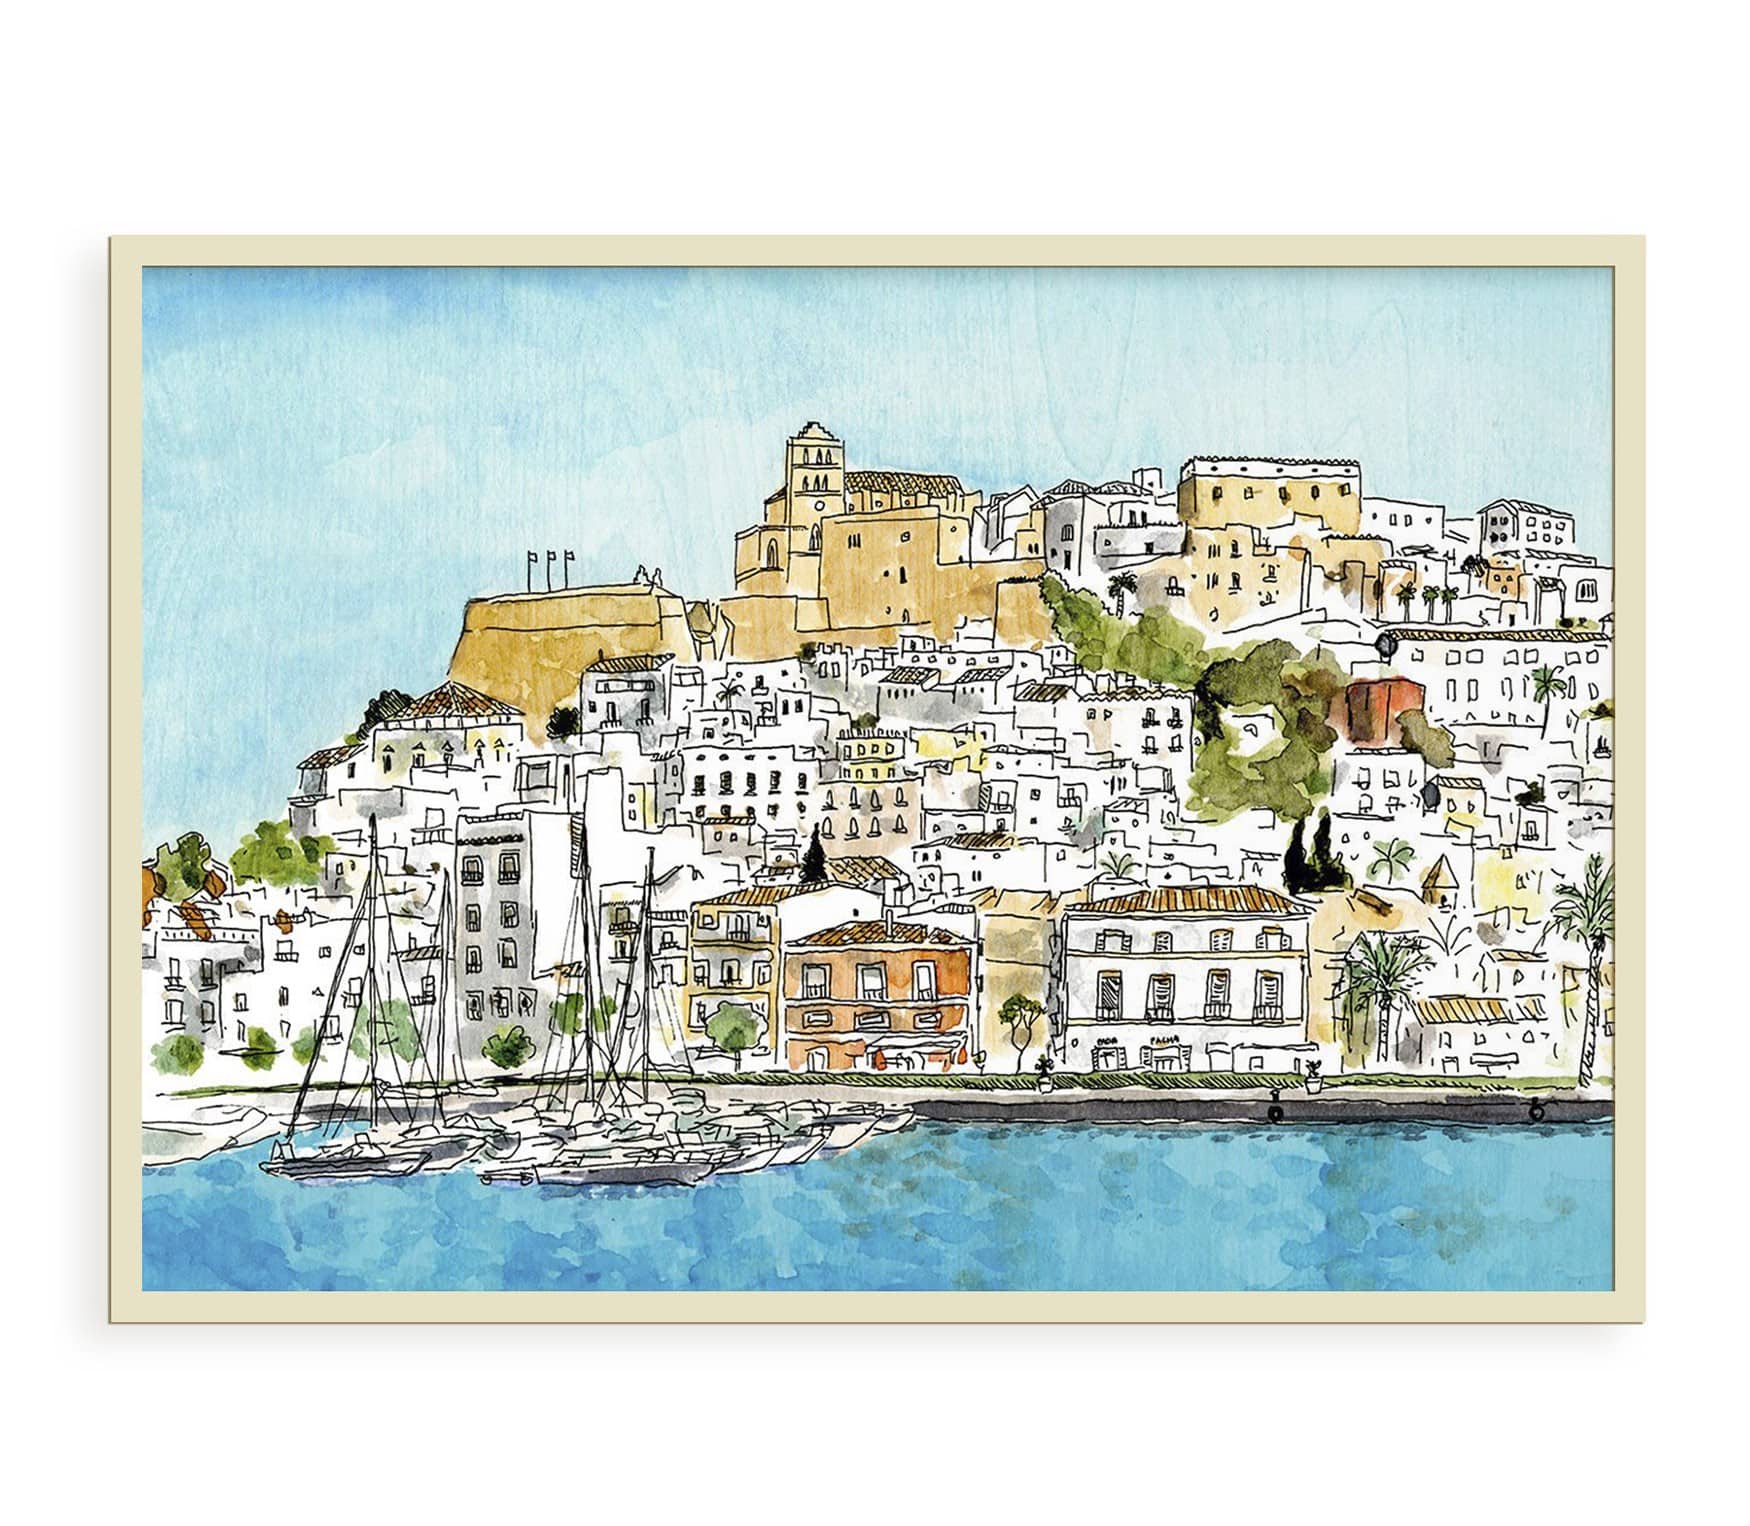 Lámina con una ilustración de Dalt Vila en la isla de Ibiza, Baleares (España). Dibujo en acuarela y tinta. Cuadro decorativo para enmarcar